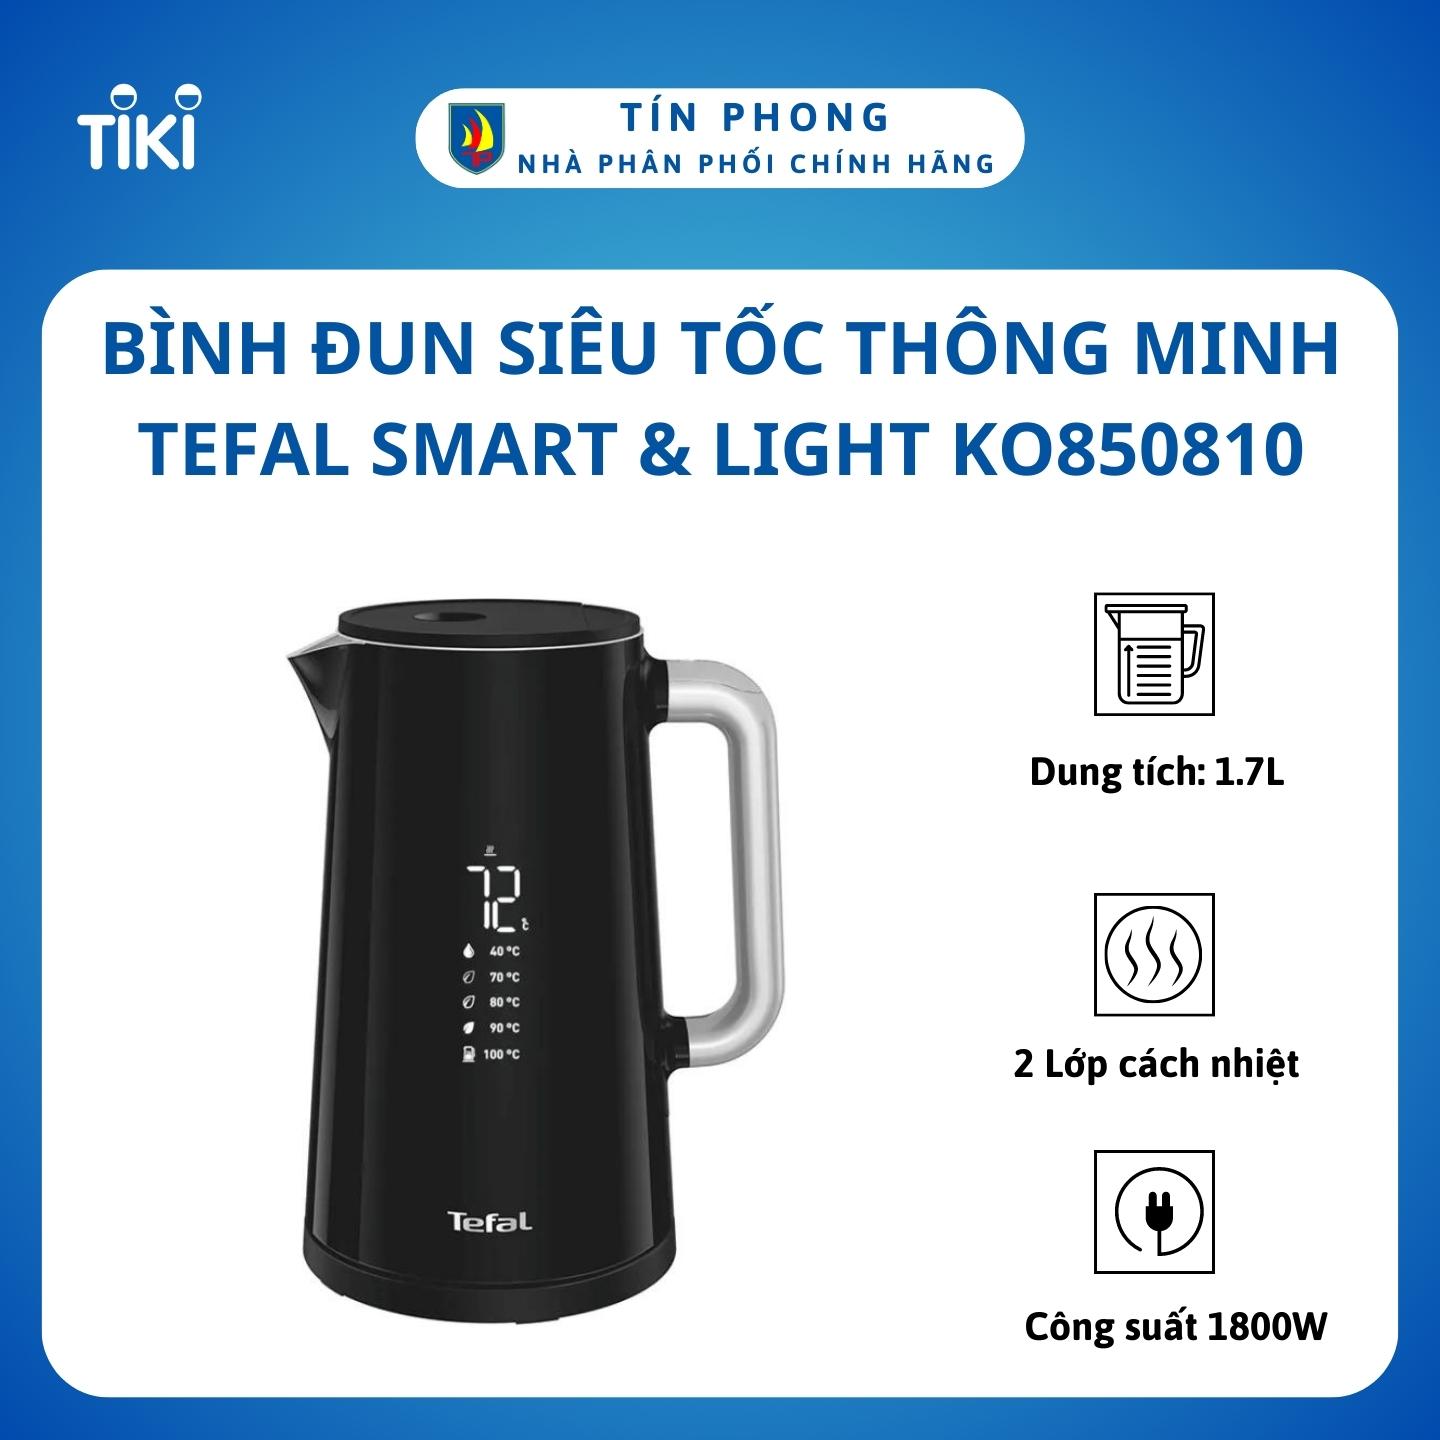 Mua Bình đun siêu tốc thông minh 1.7L Tefal Smart & Light KO850810 - 1800W  - Hàng chính hãng tại Gia dụng Tín Phong | Tiki